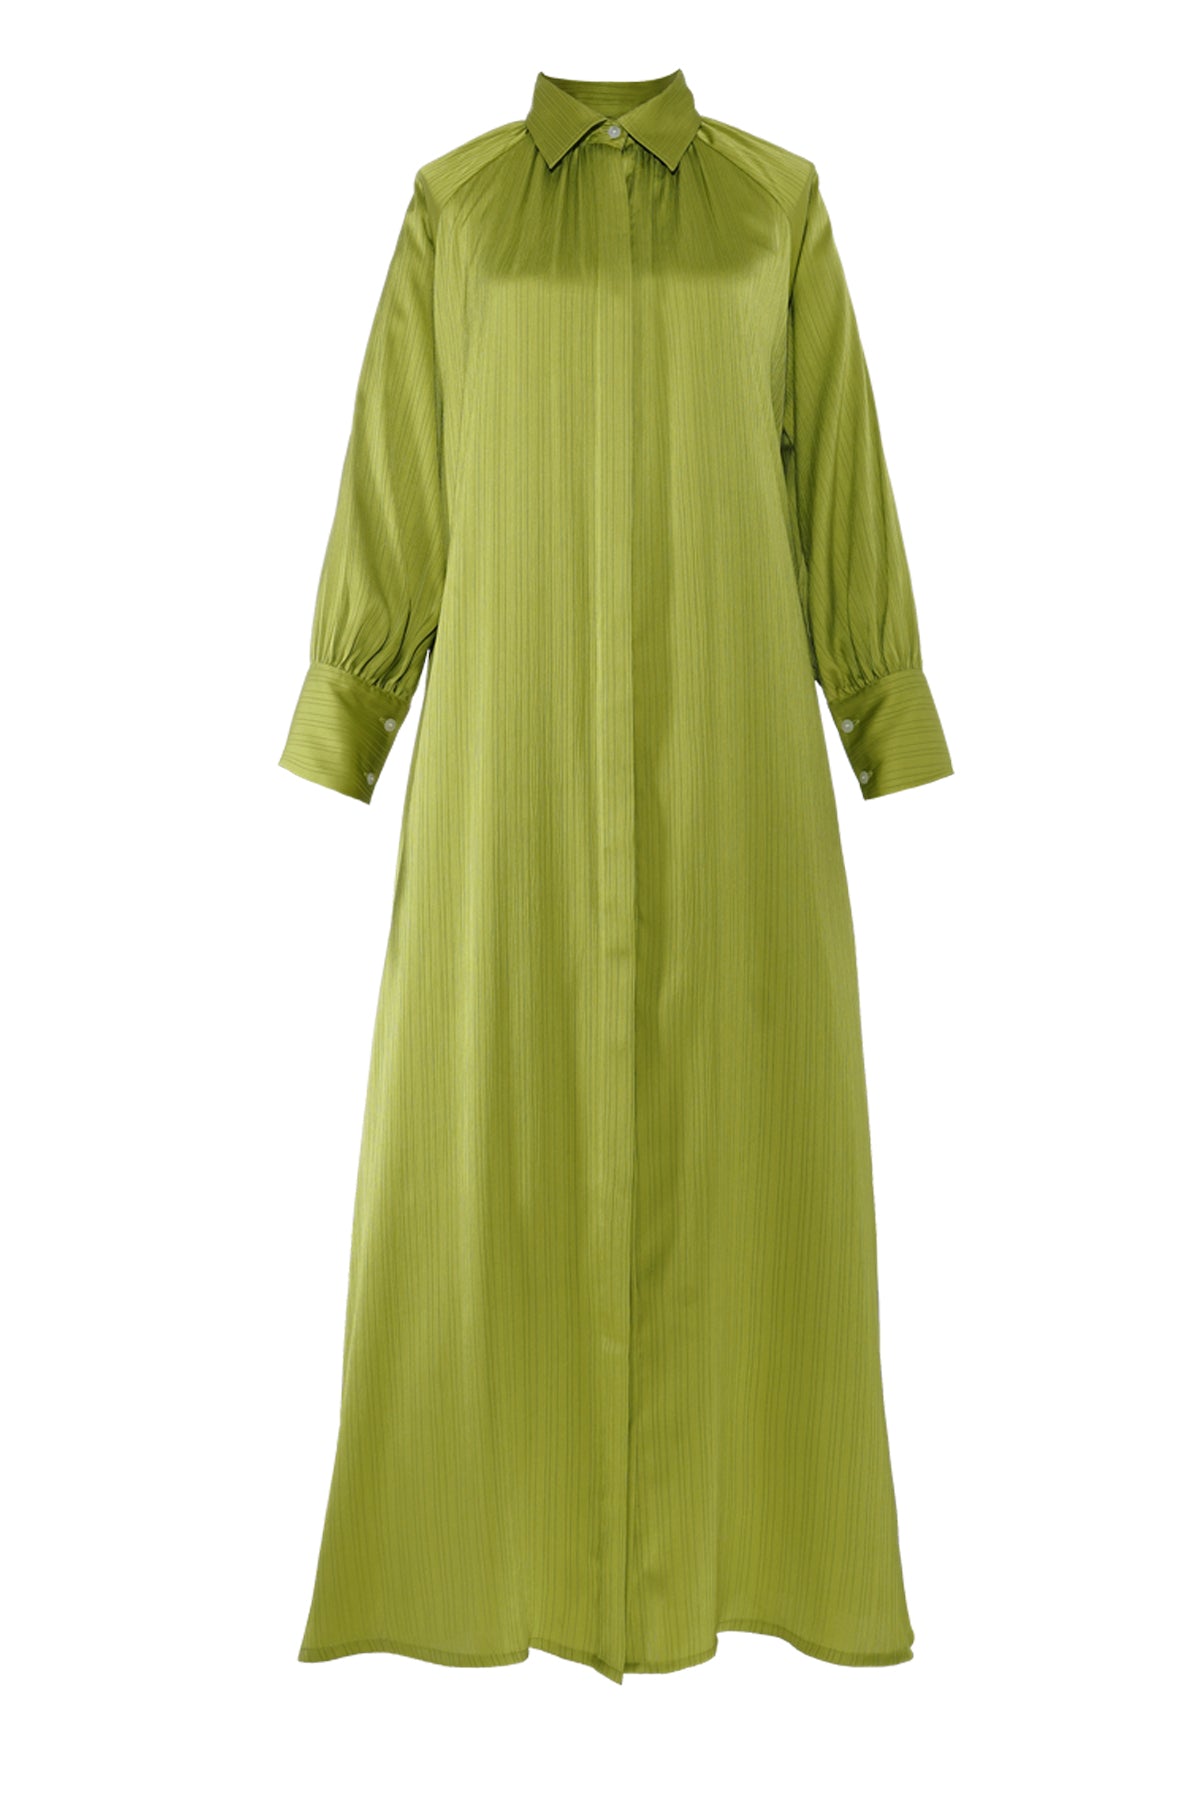 Mandy Raglan Shirt Dress - Lime Green – Buttonscarves